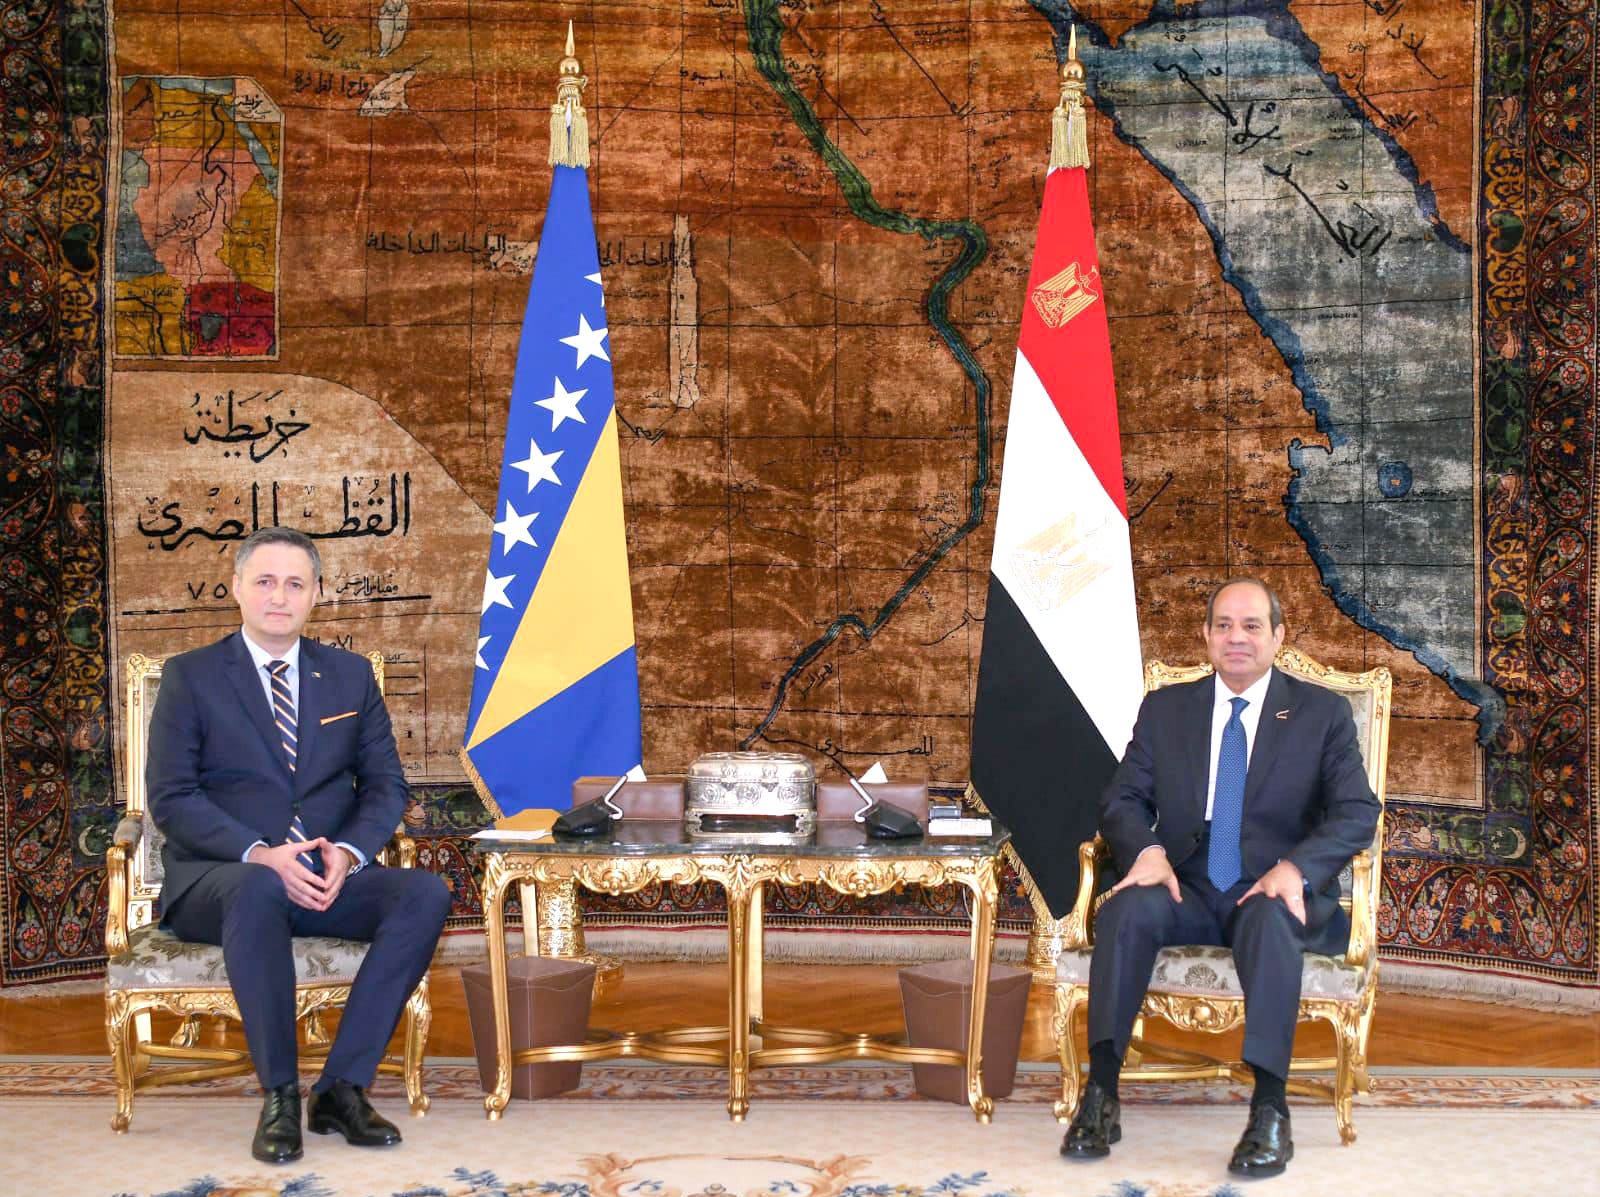 الرئيس المصري يلتقي رئيس مجلس رئاسة البوسنة والهرسك